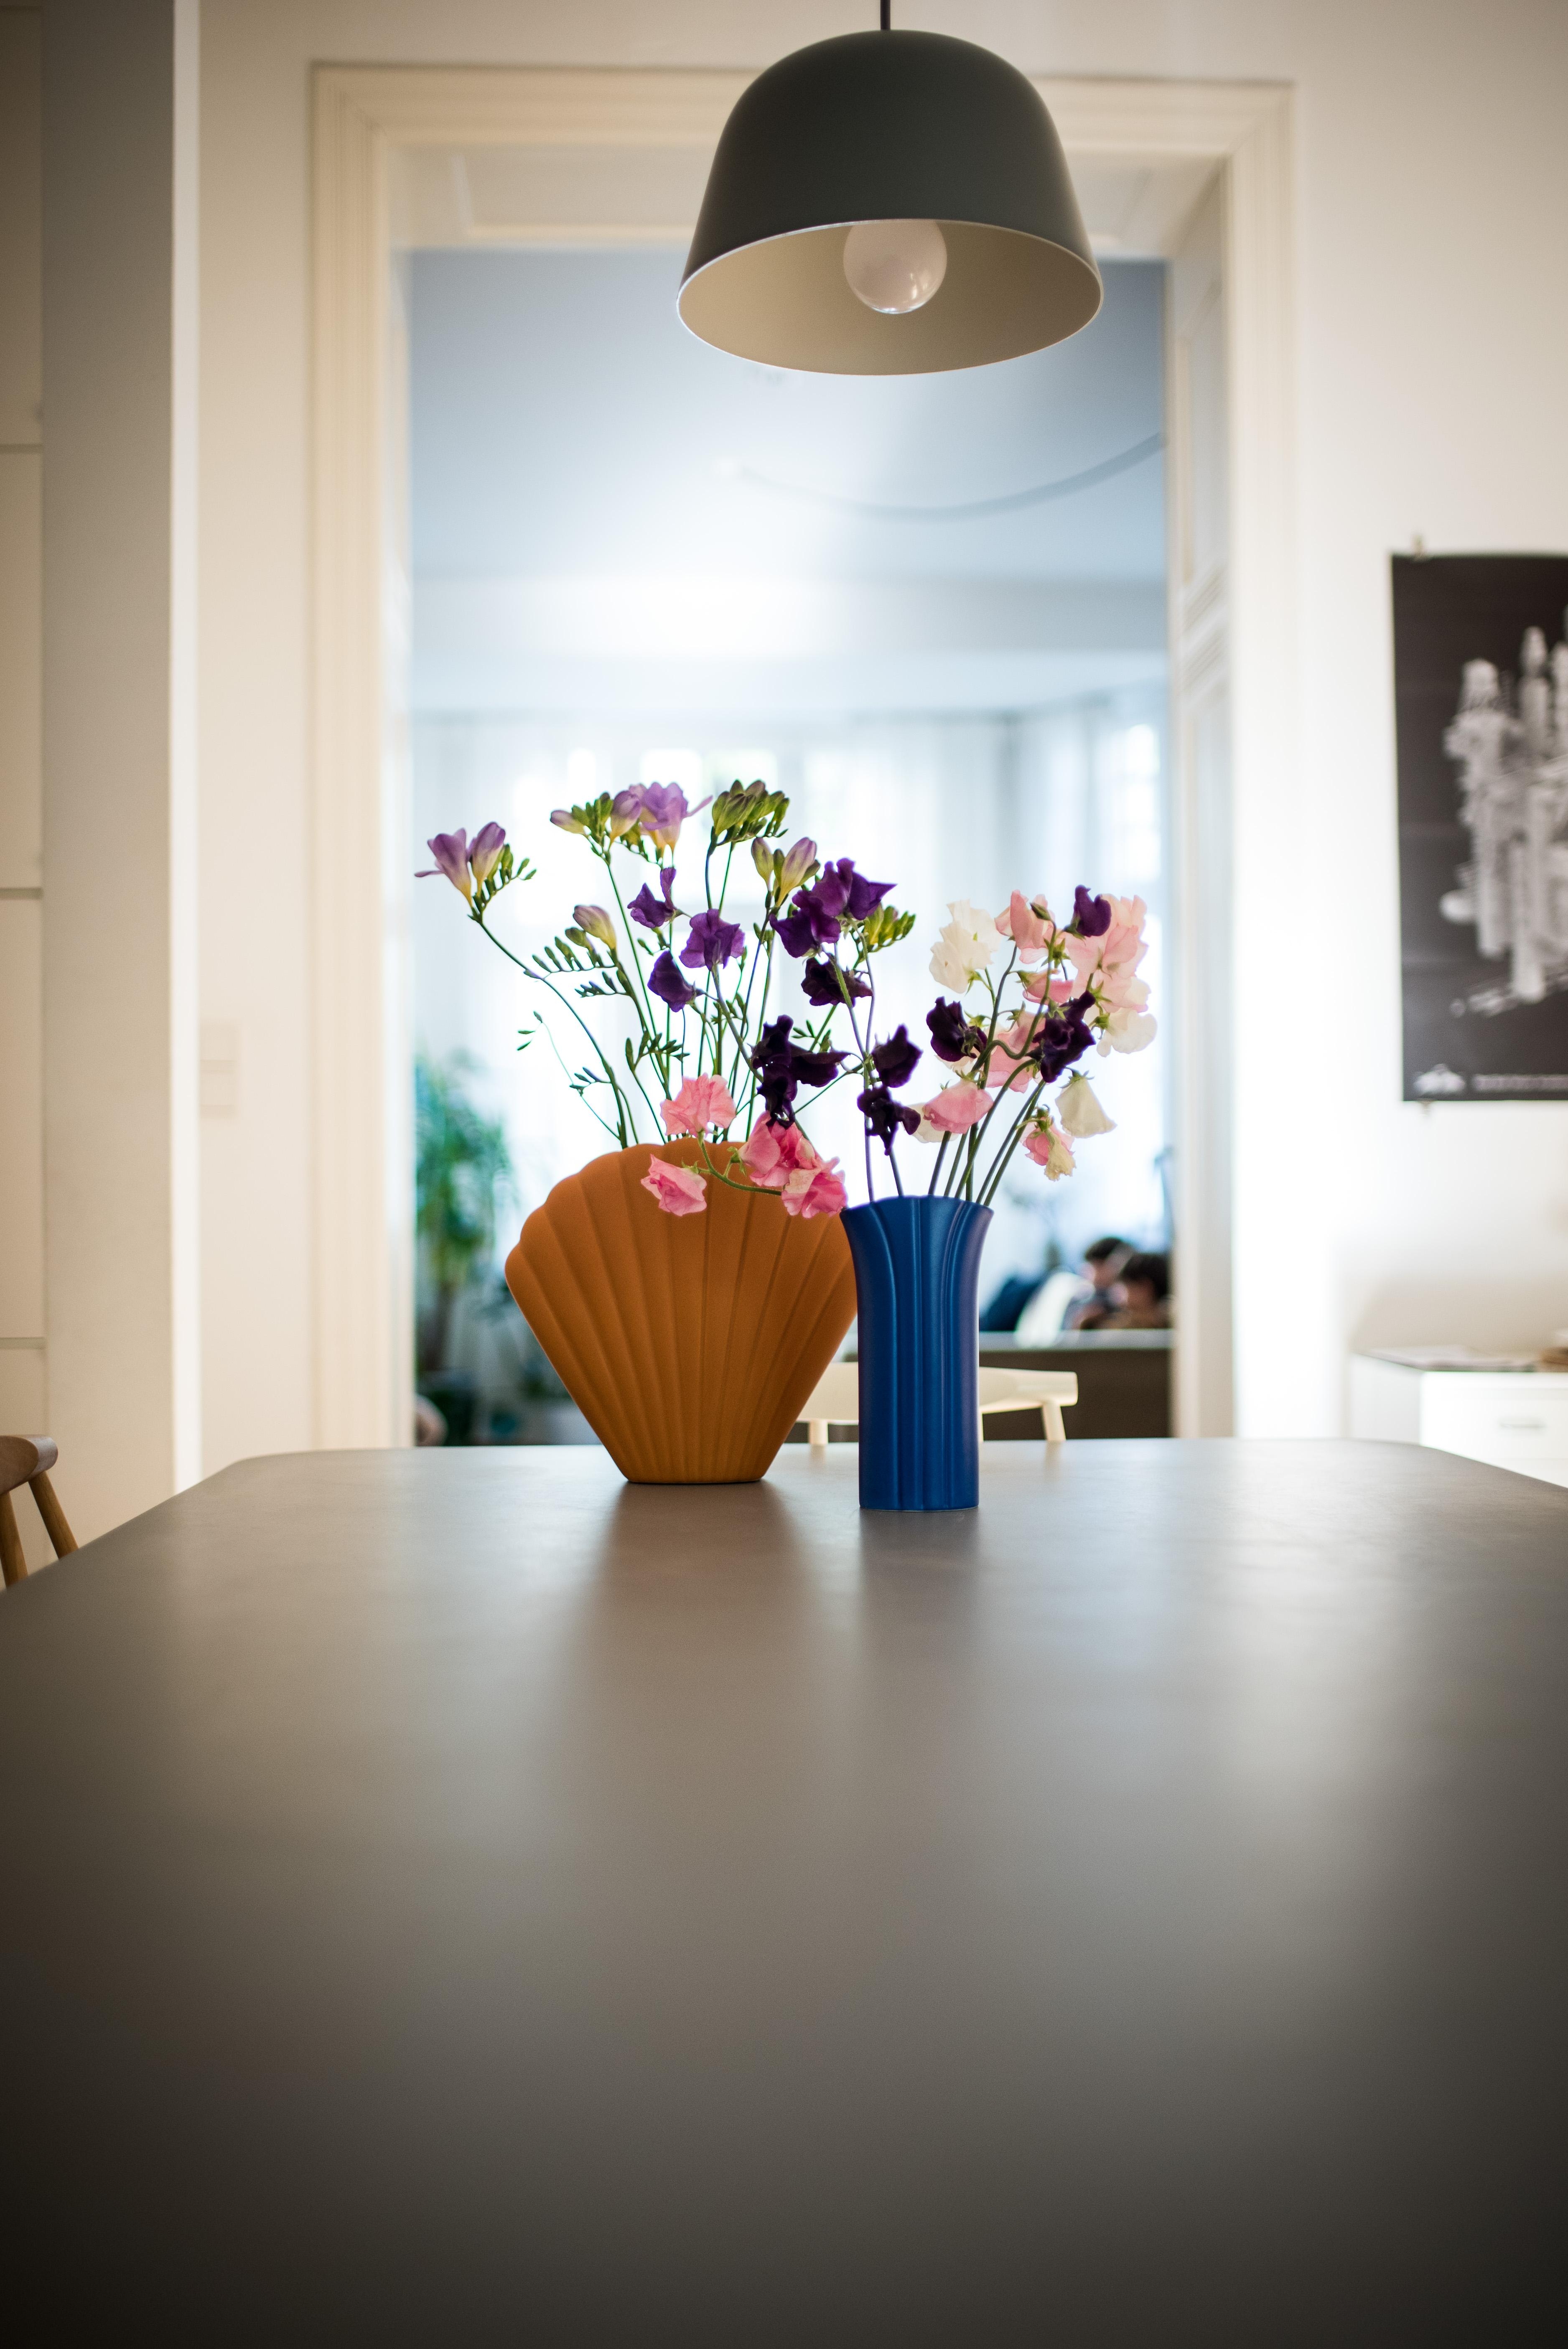 Blumiger Morgengruß in meinen neuen Lieblingsvasen #flowers #dekoration #kitchentable #decoinspo #küchentisch